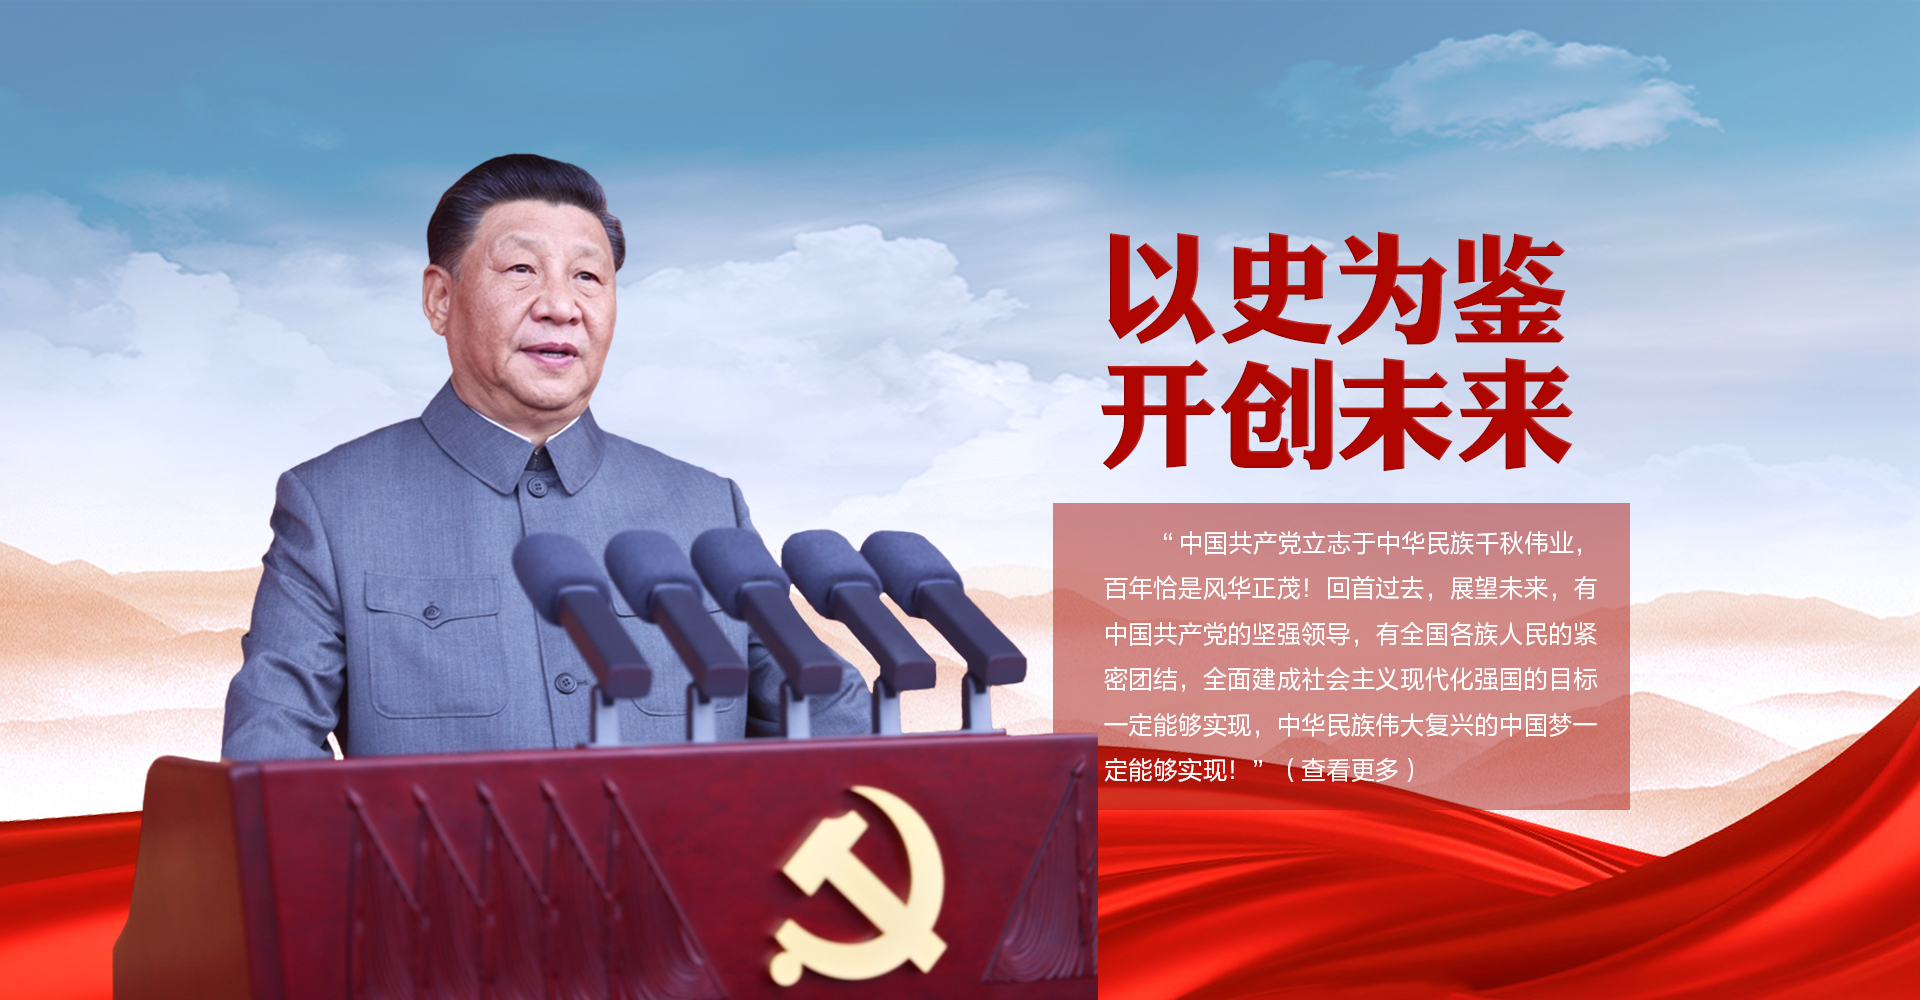 在慶祝中國共產黨成立100周年大會上 習近平這些話鏗鏘有力